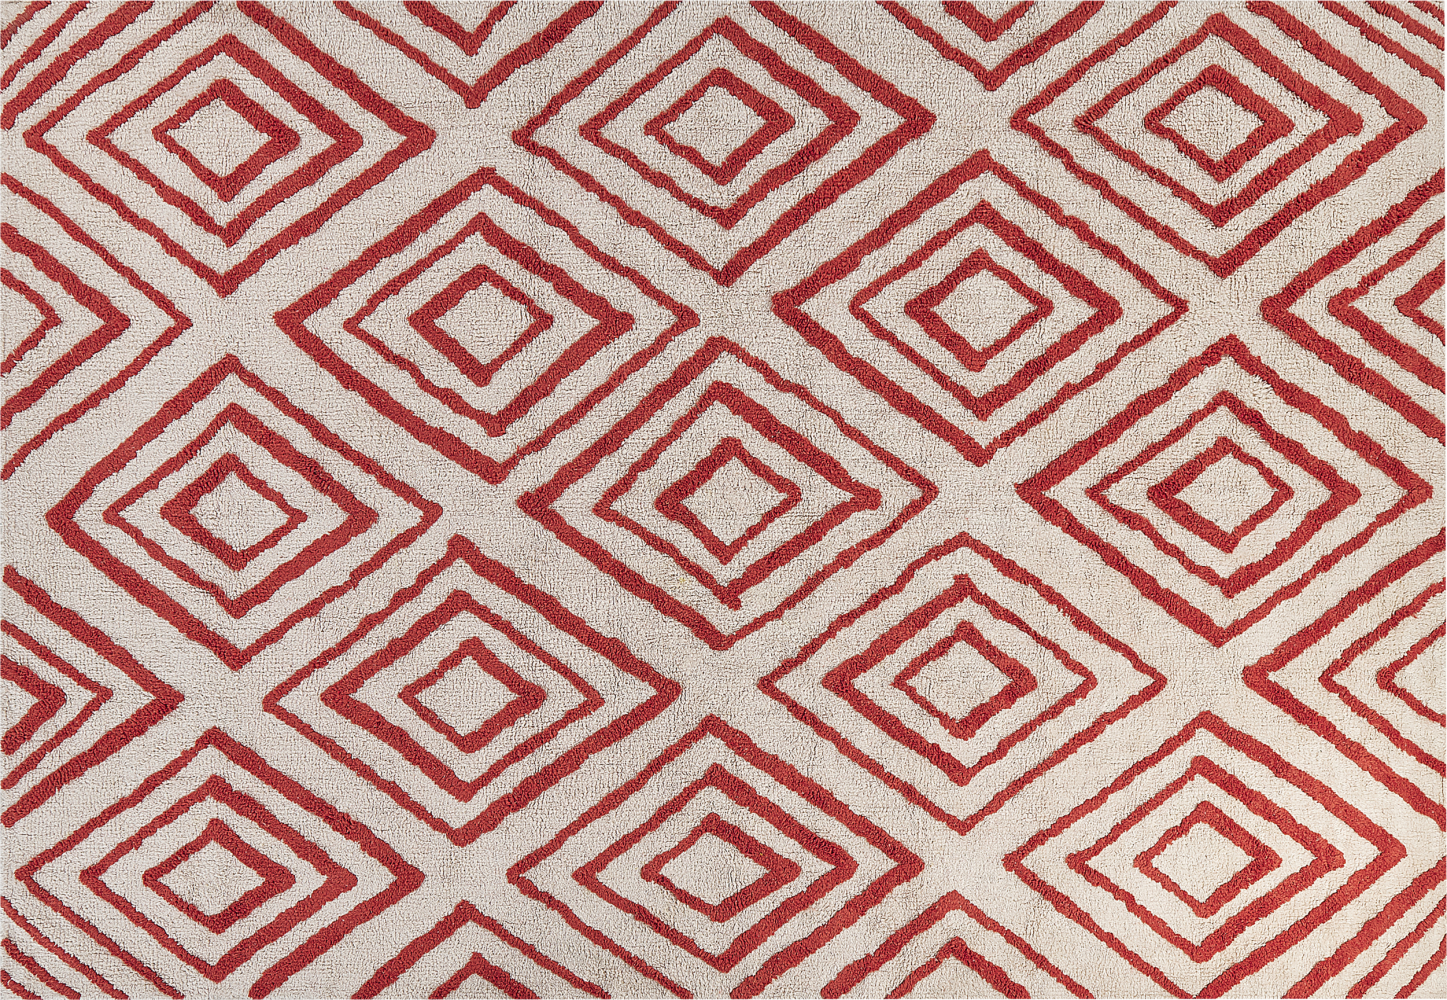 Teppich Baumwolle cremeweiß rot 160 x 230 cm geometrisches Muster Shaggy HASKOY Bild 1